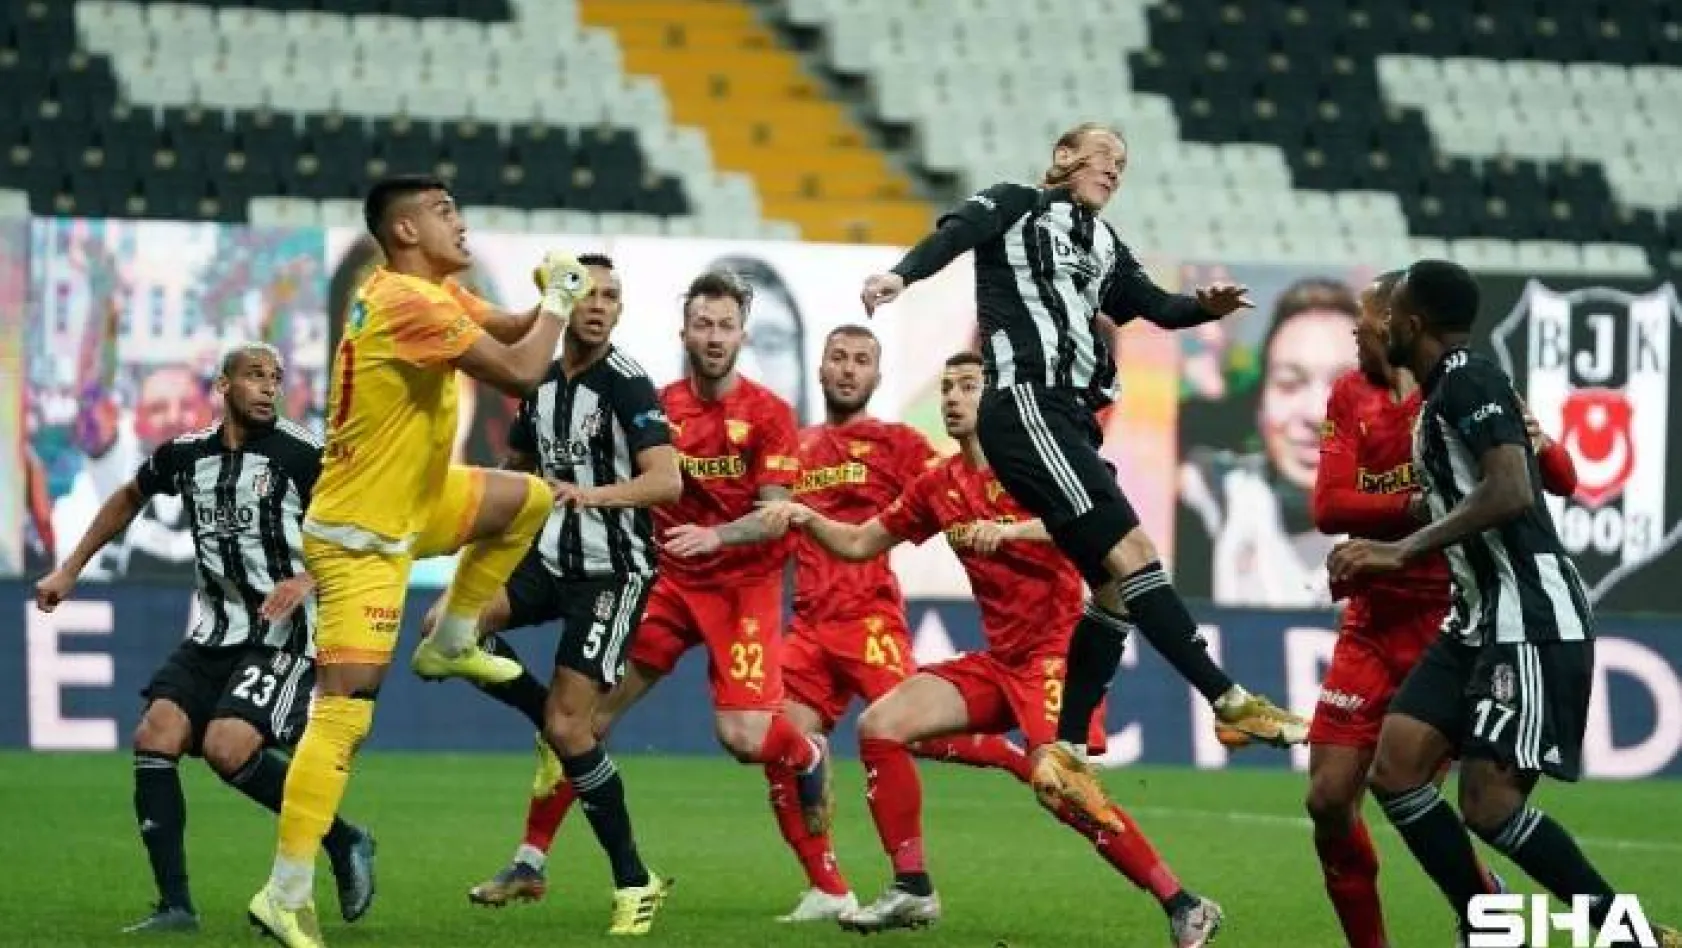 Süper Lig: Beşiktaş: 2 - Göztepe: 1 (Maç sonucu)